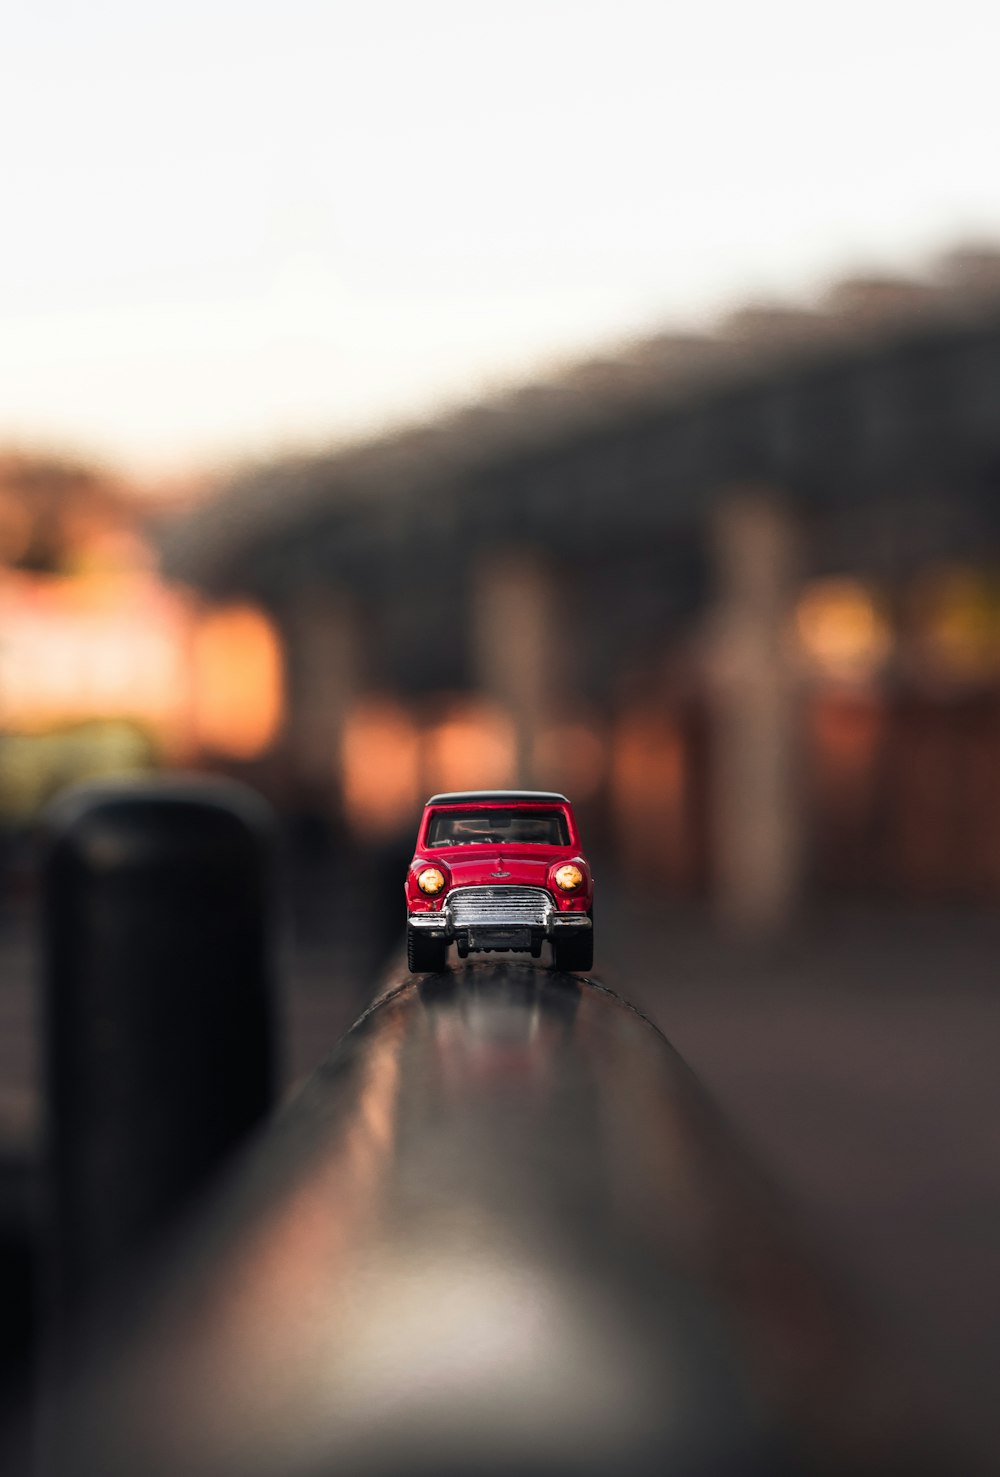 Fotografía de enfoque superficial de un automóvil rojo fundido a presión